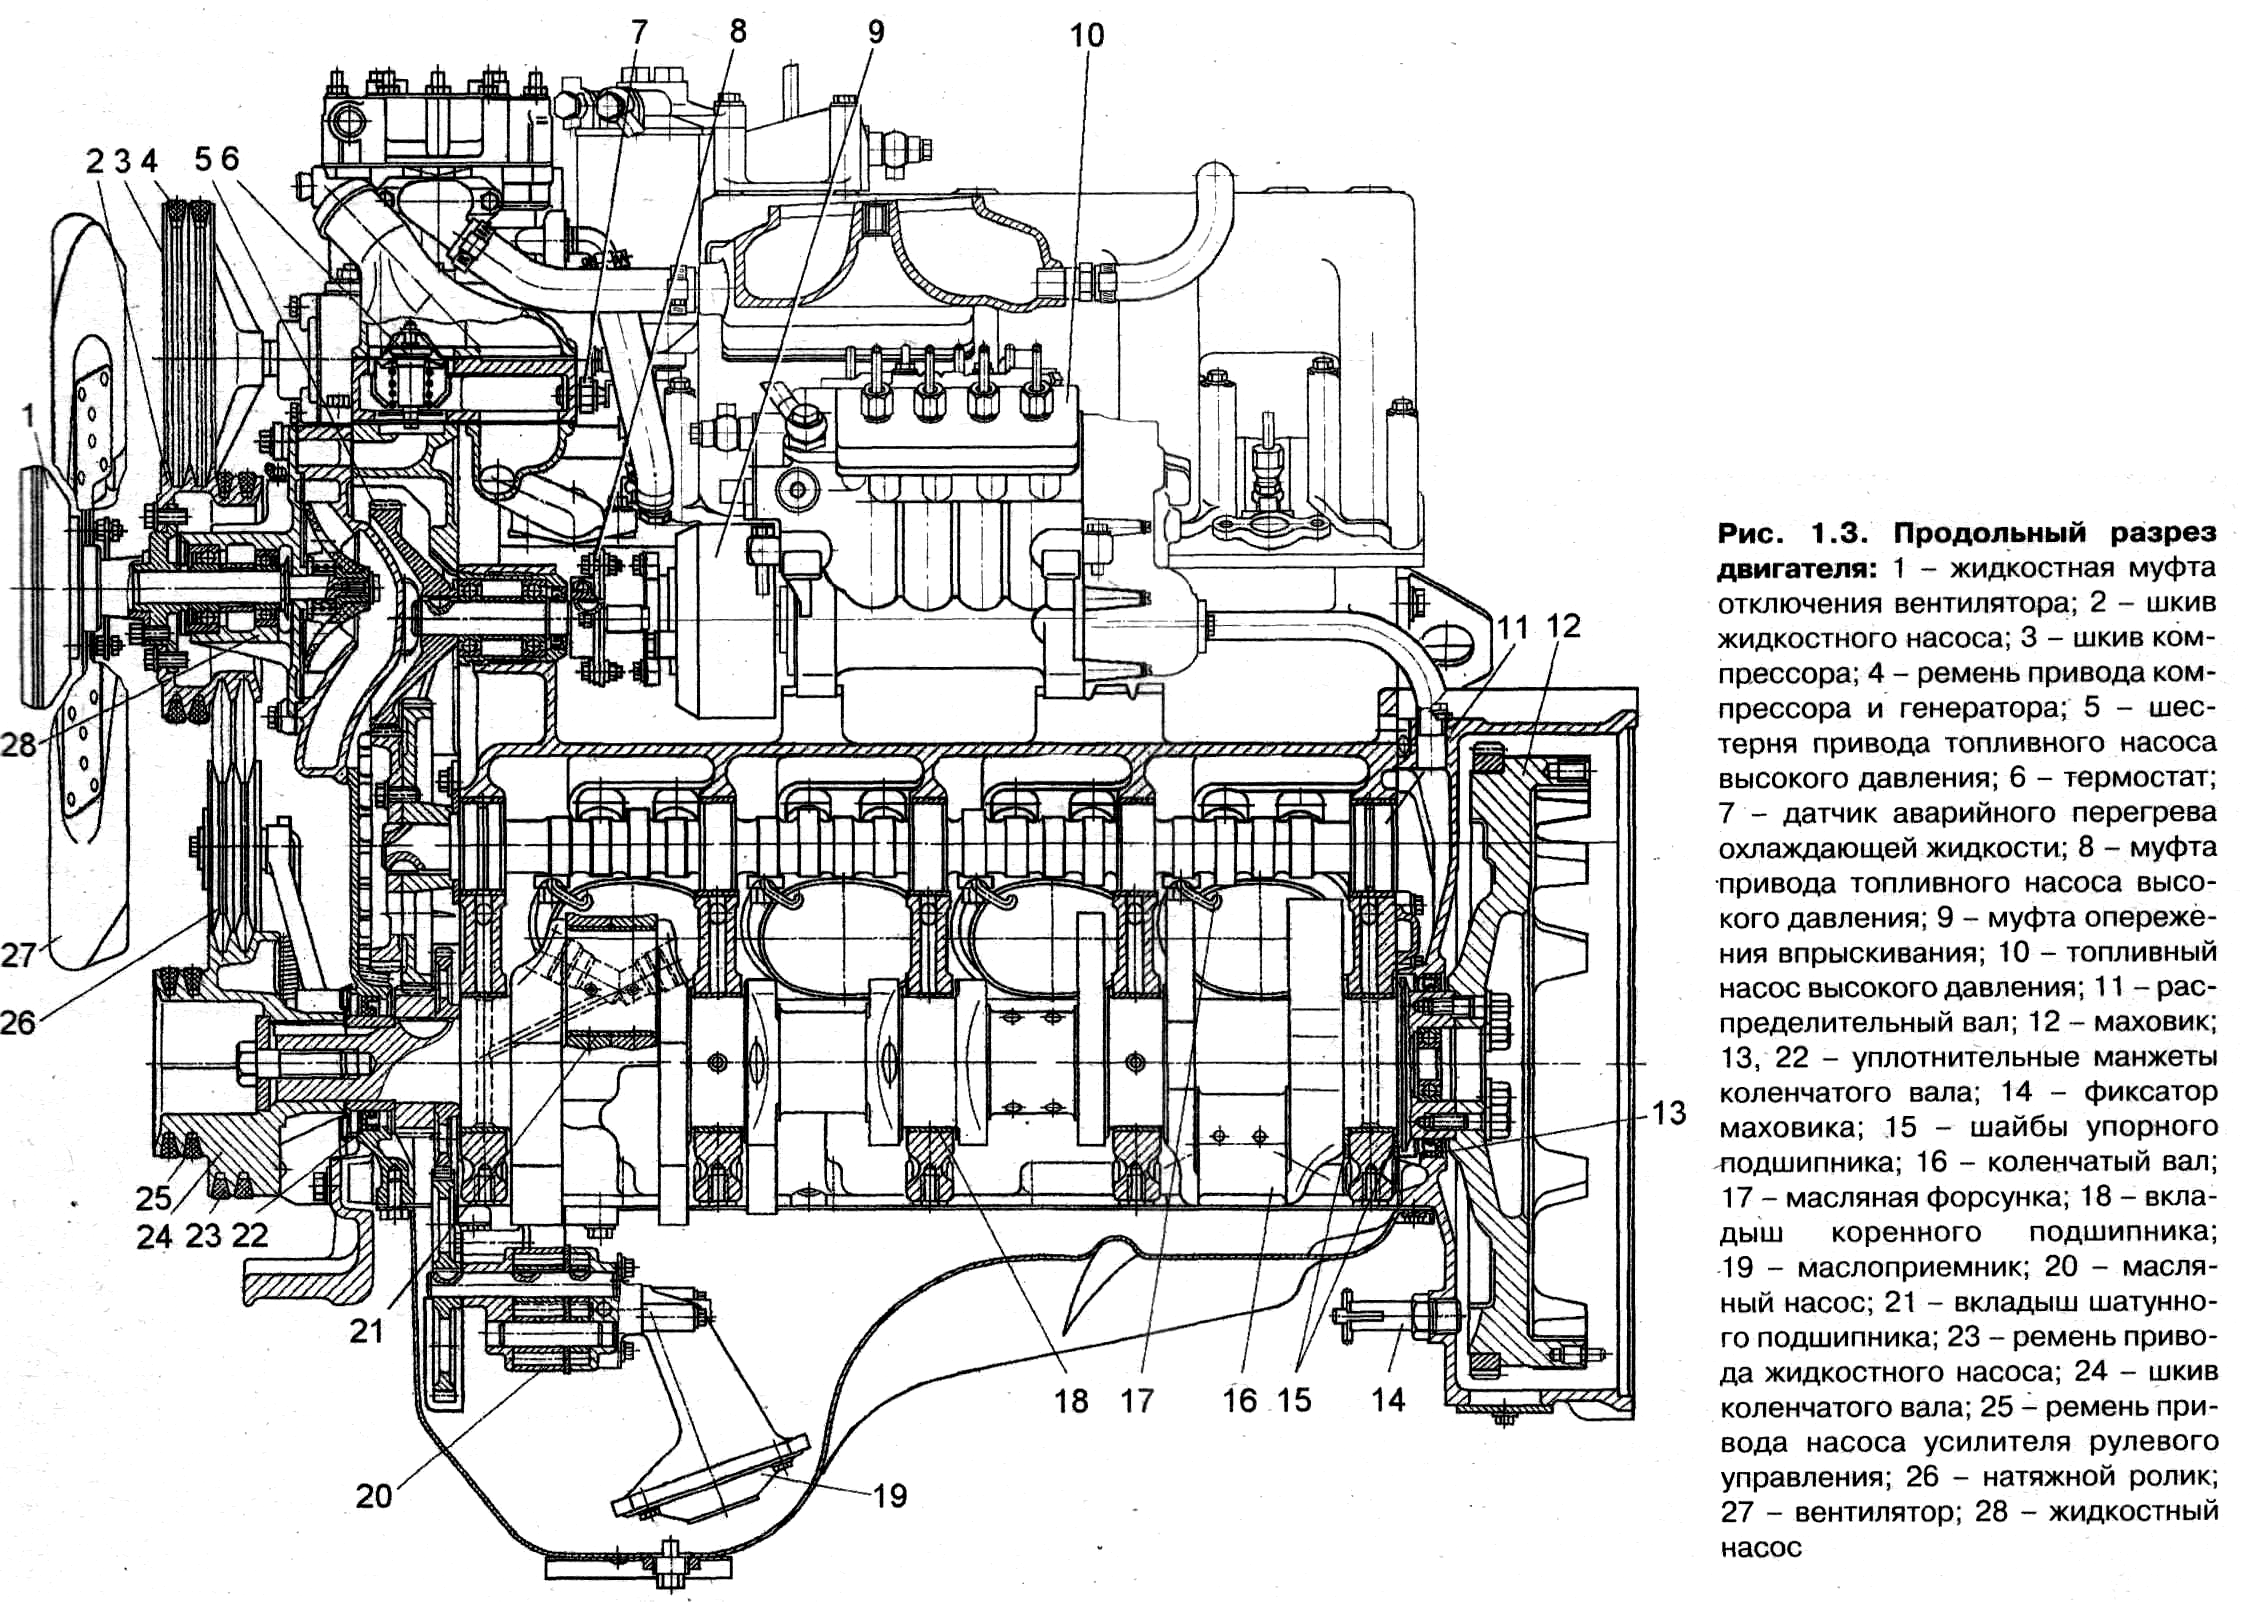 Двигатель автомобиля зил 130. ЗИЛ 645 двигатель чертеж. Двигатель ЗИЛ 130 чертеж. ЗИЛ 645 двигатель в разрезе. Продольный разрез двигателя ЗИЛ 130.